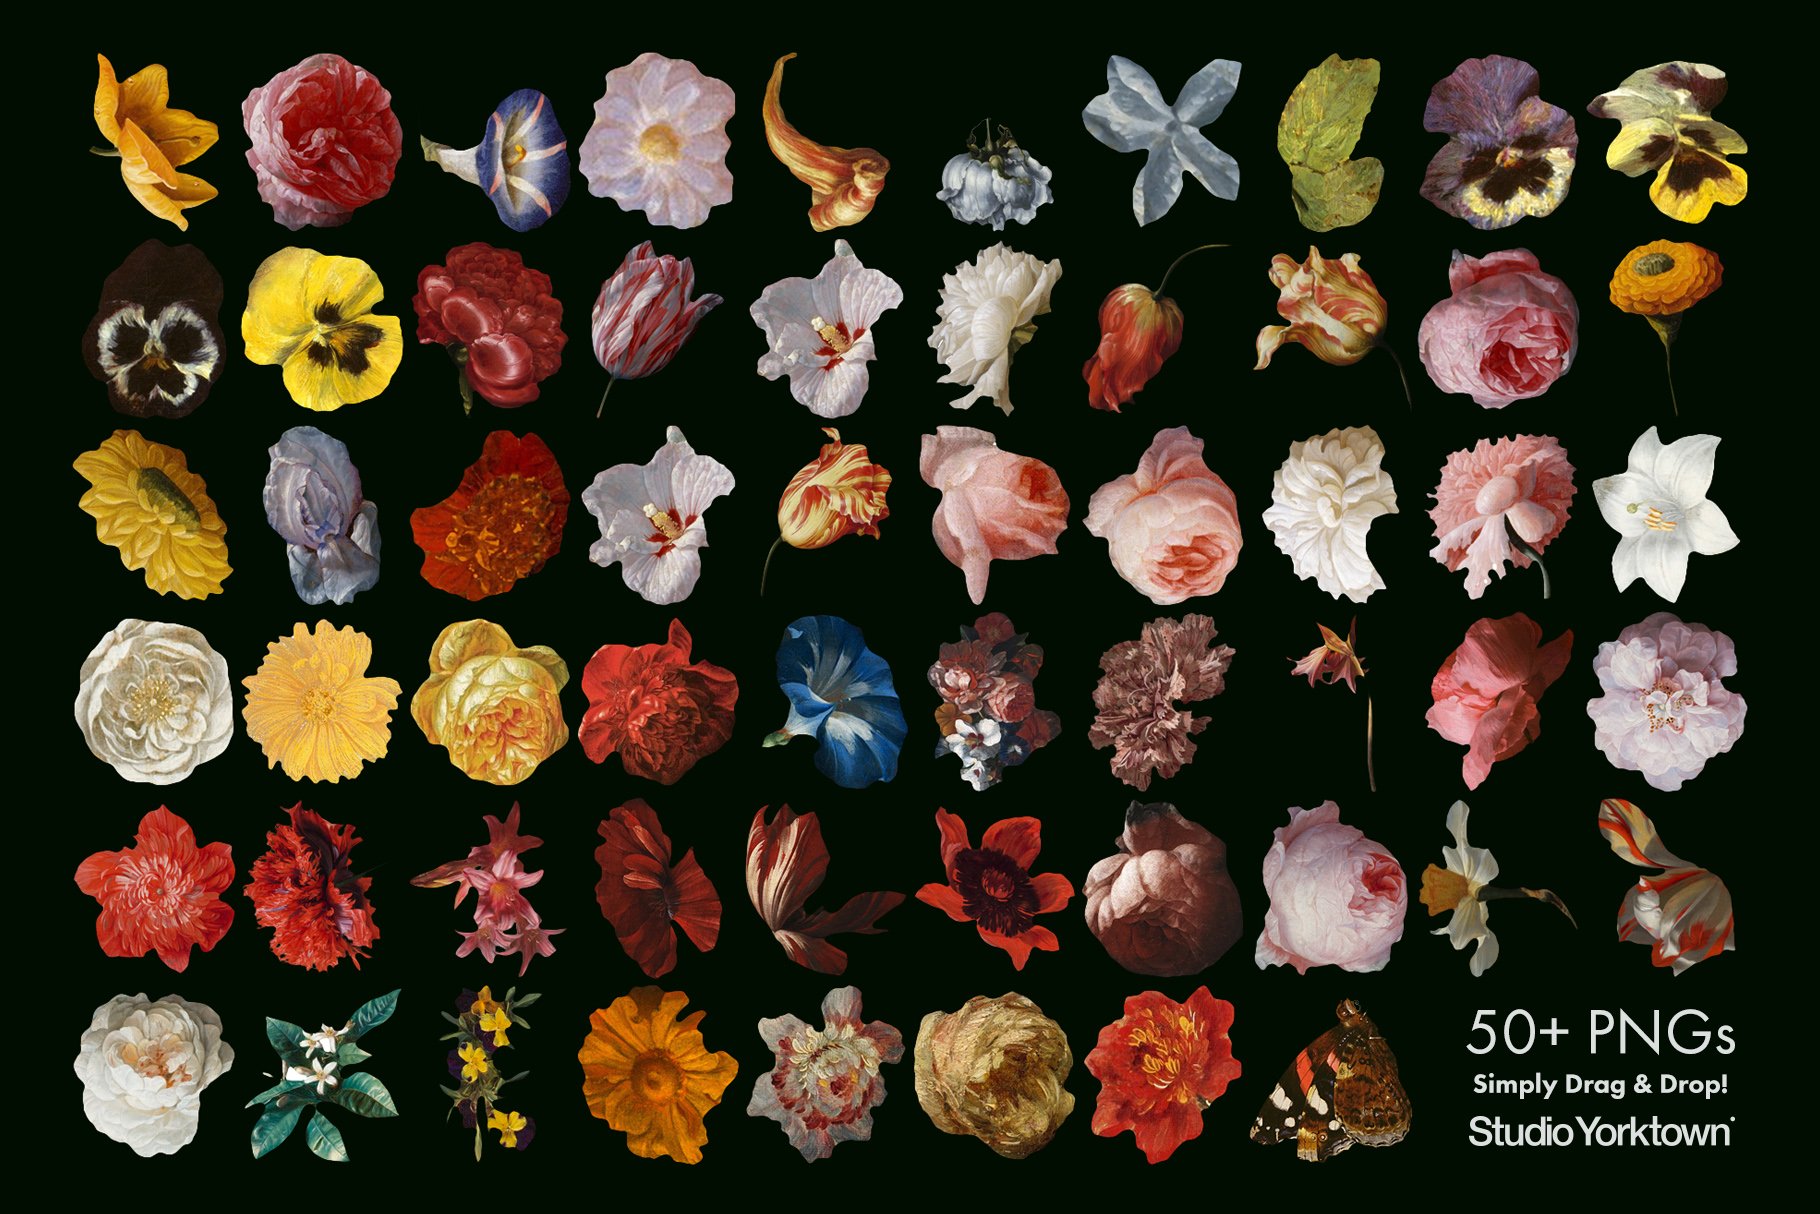 100多种复古花卉古典艺术品图像集合 Kurohana - Moody Florals Collection（3757）图层云